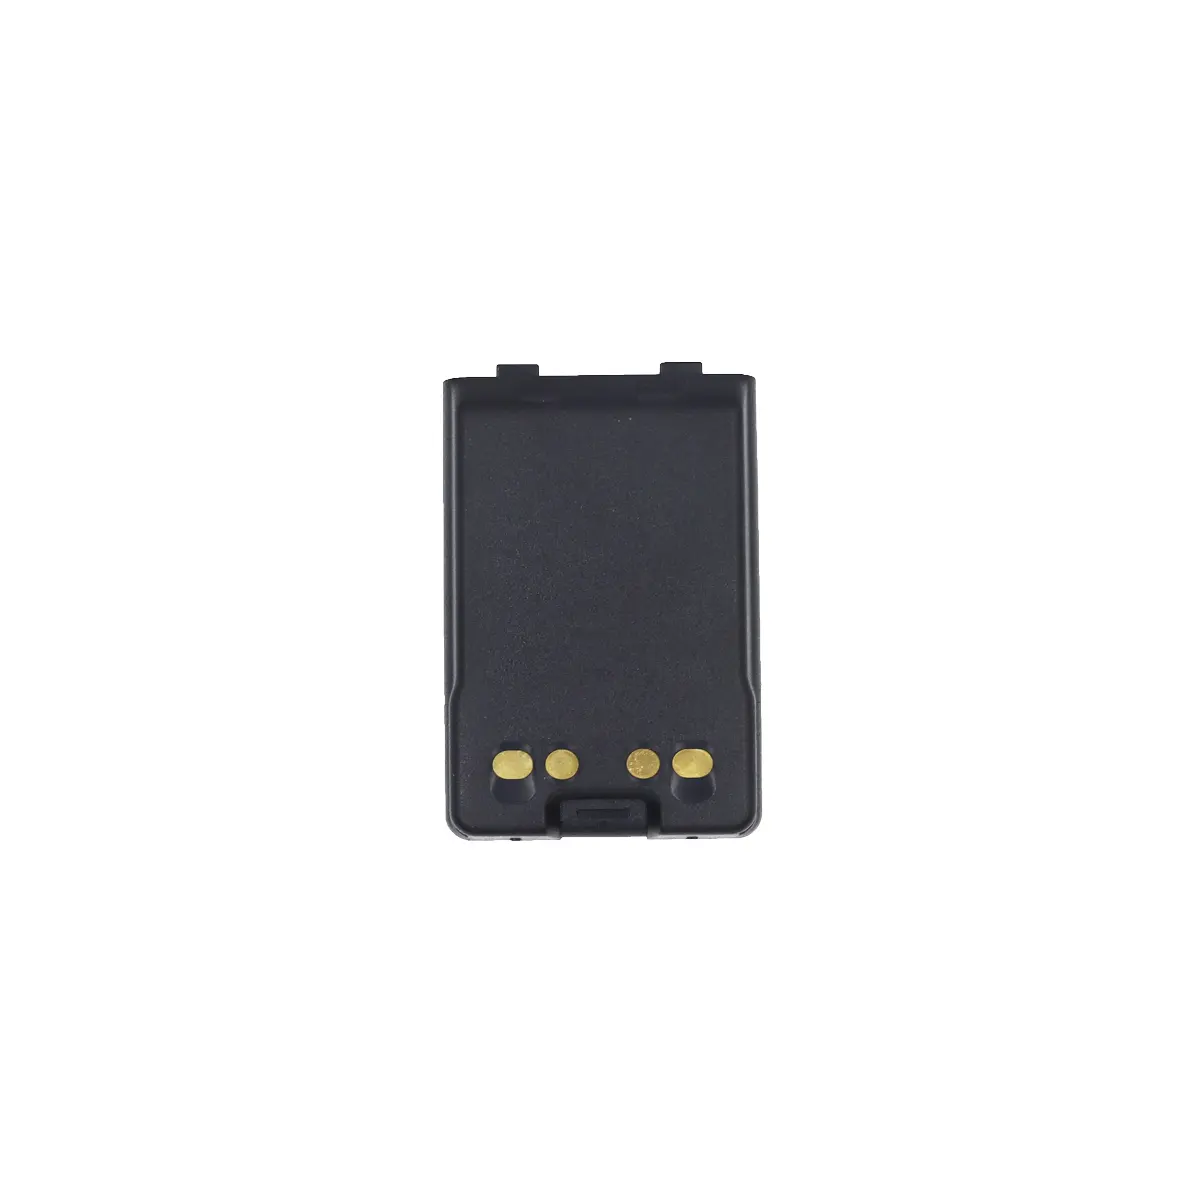 Rechargeable FNB-V126Li walkie talkie battery for Vertex VX110 VX120 VX150 VX160 VX180 VX210 VX400 VXA120 VXA200